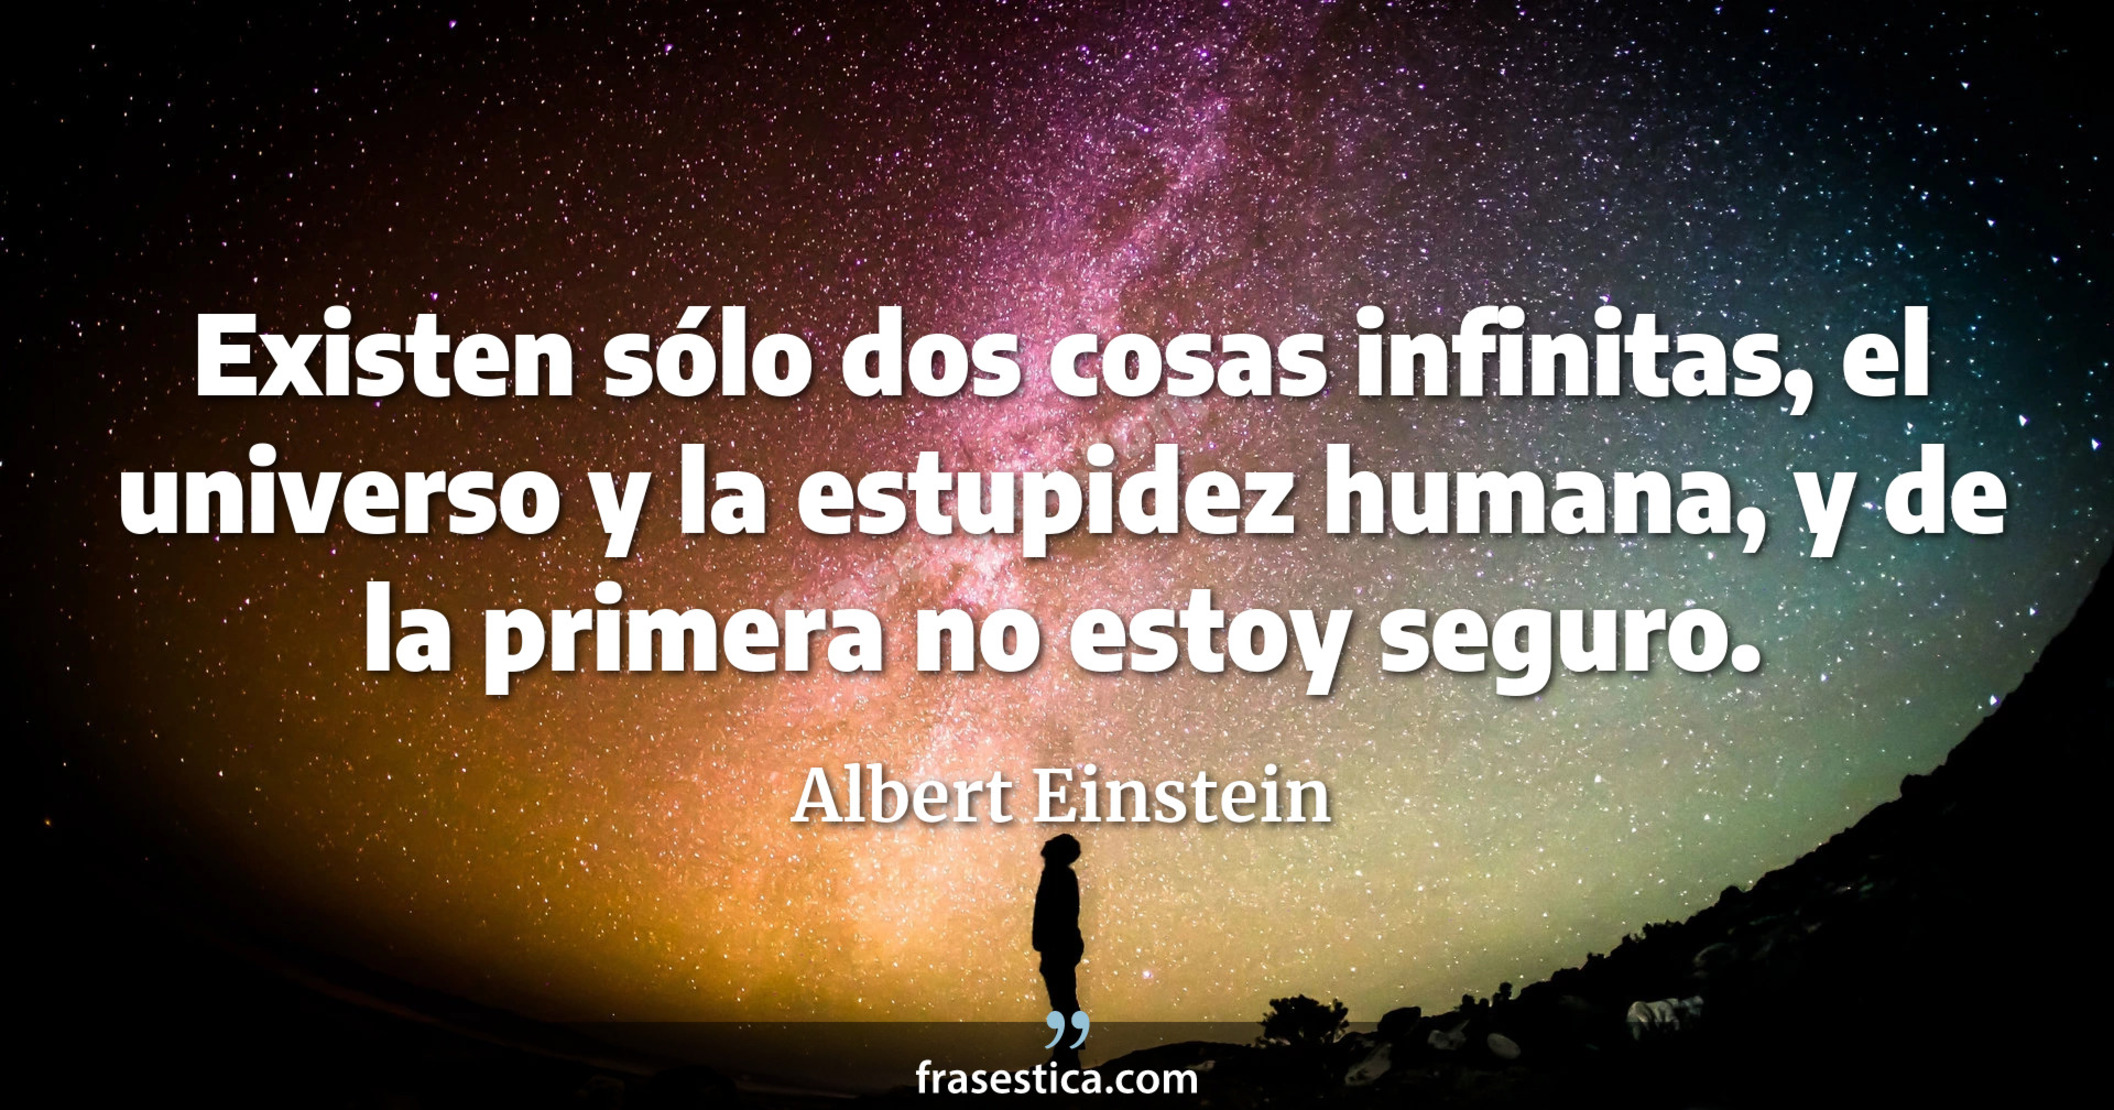 Existen sólo dos cosas infinitas, el universo y la estupidez humana, y de la primera no estoy seguro. - Albert Einstein